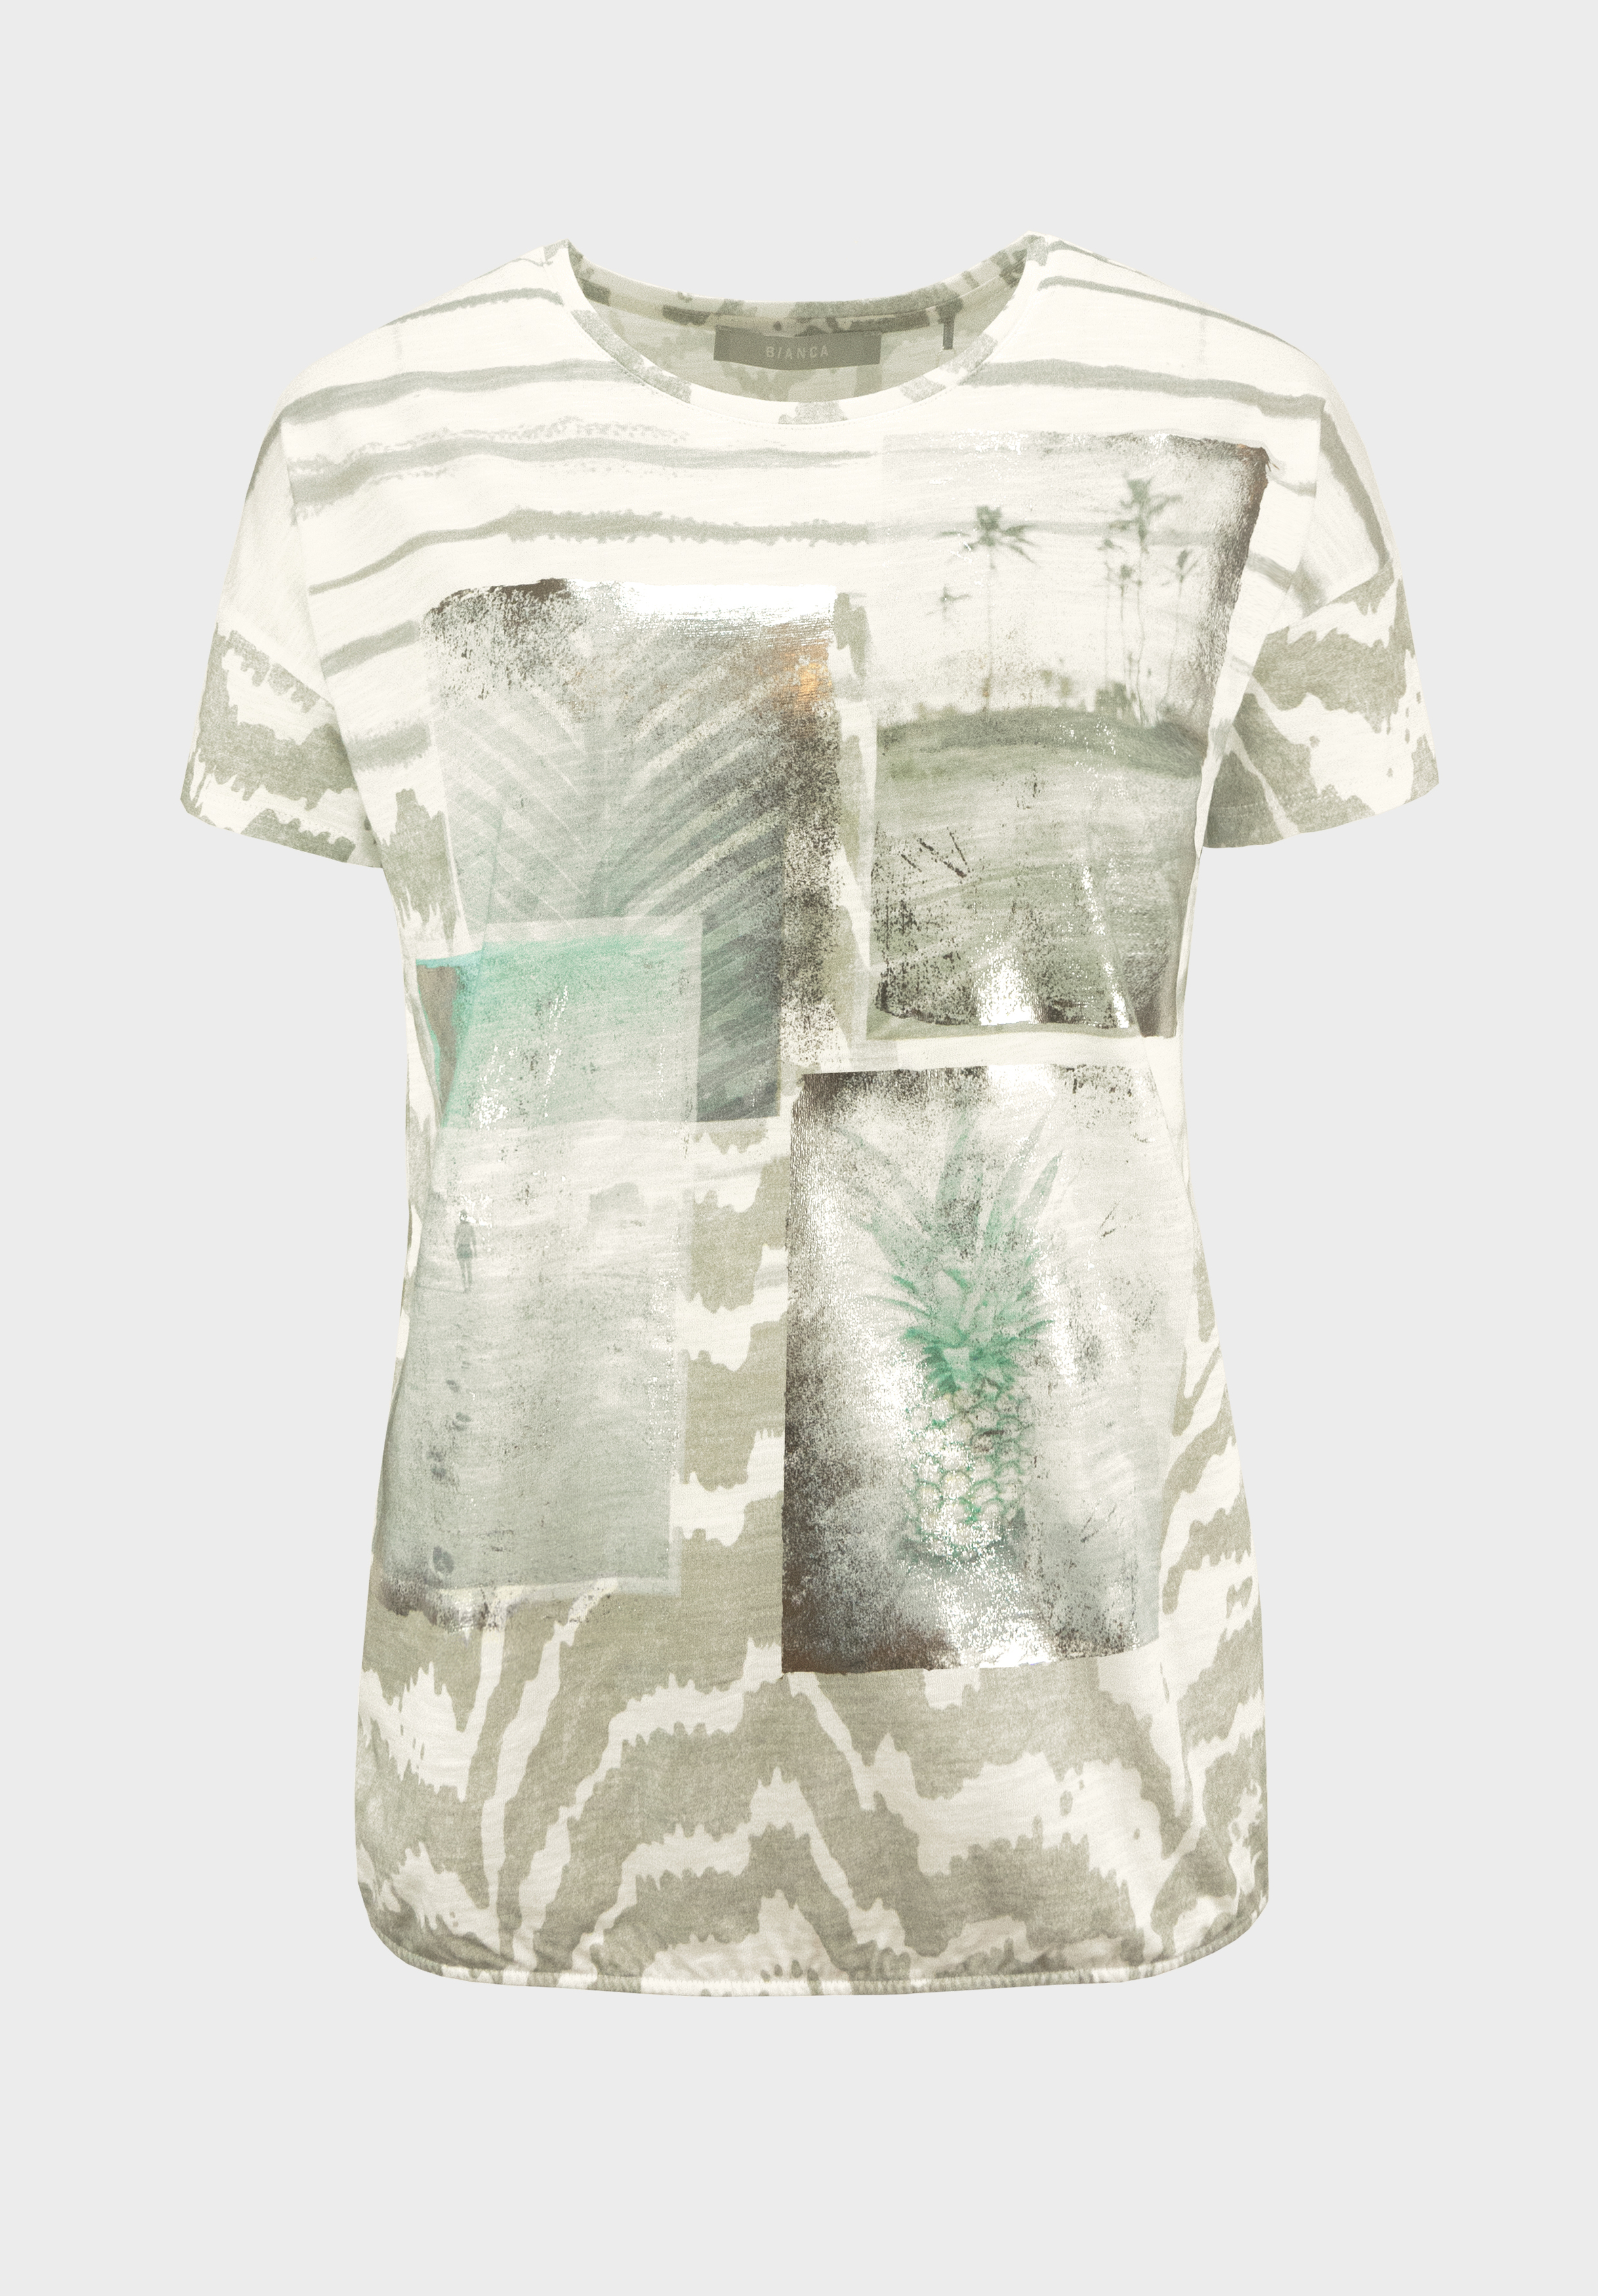 Baumwoll-T-Shirt "JULIE" mit platziertem Muster-Druck und Gummibund